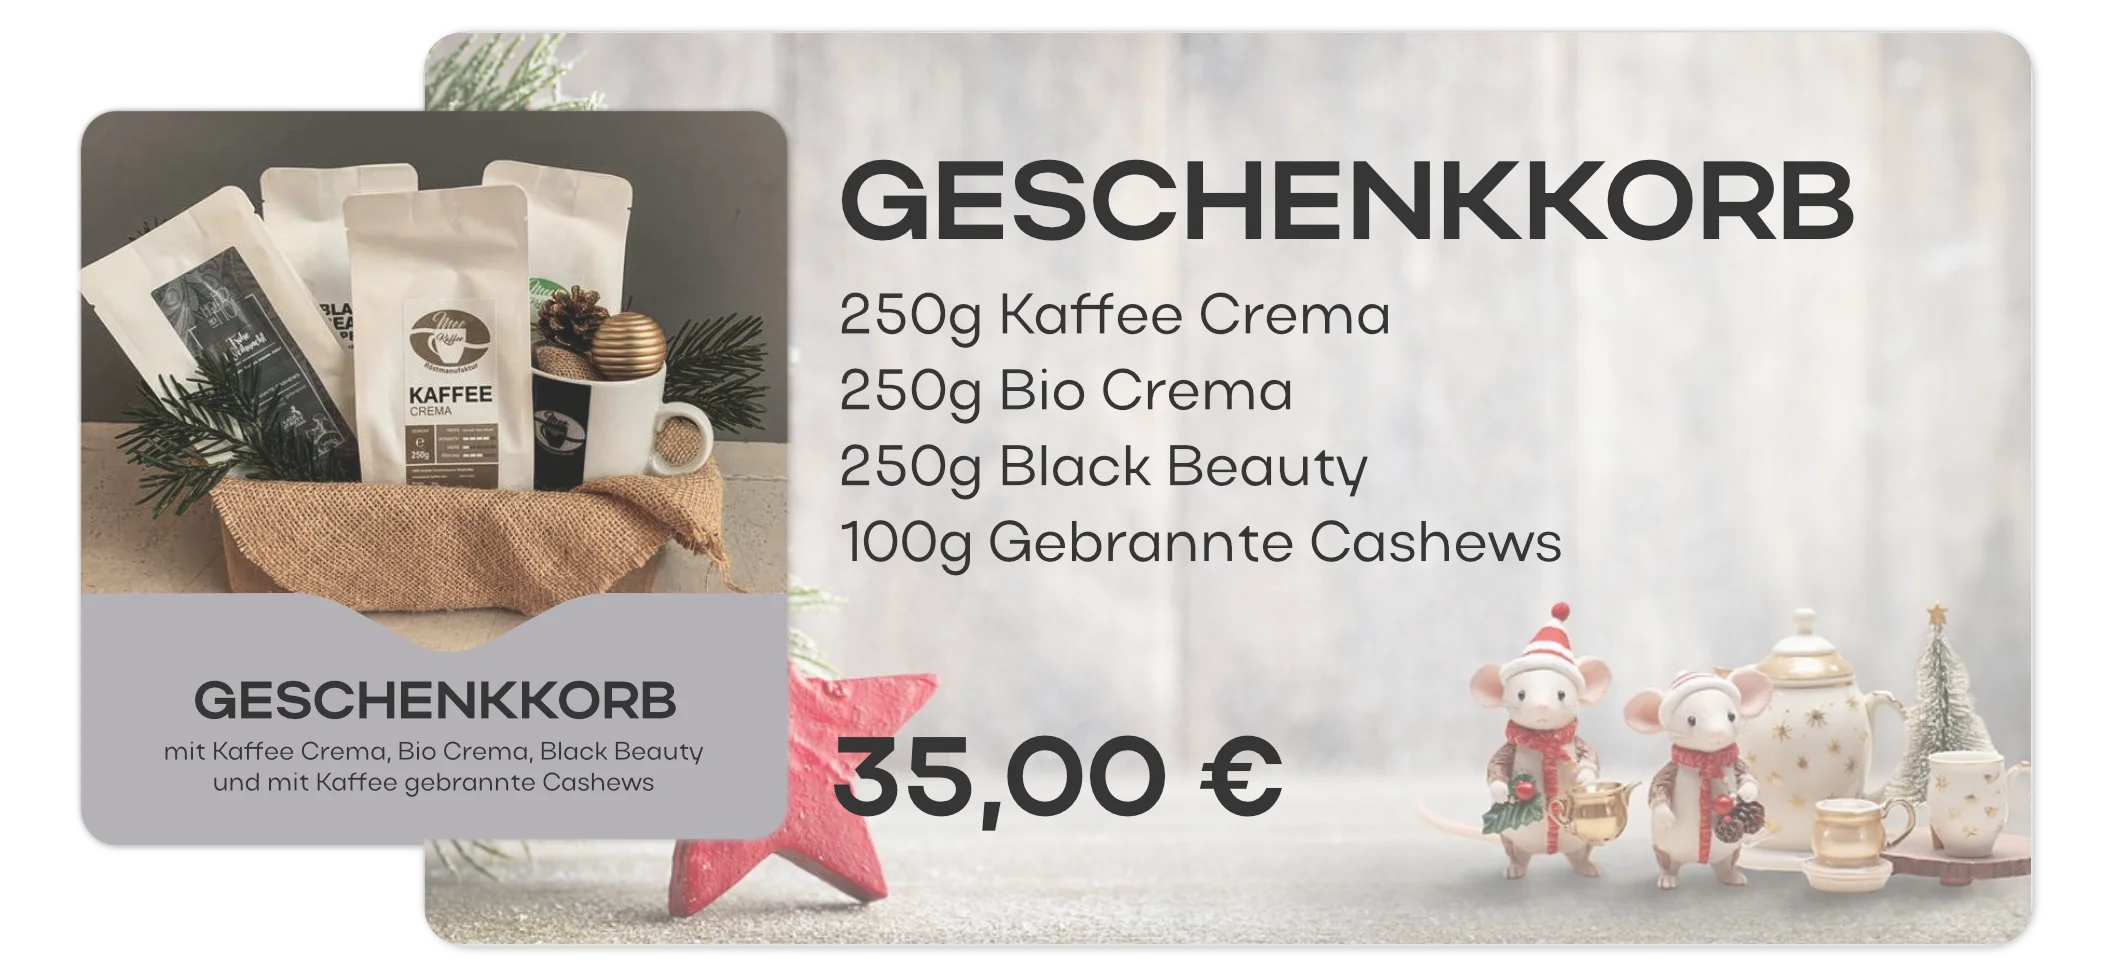 Produktkarte für den MEE KAFFEE Geschenkkorb: Beinhaltet Café Crema, Bio Crema, Black Beauty, gebrannte Cashews und eine Potttasse